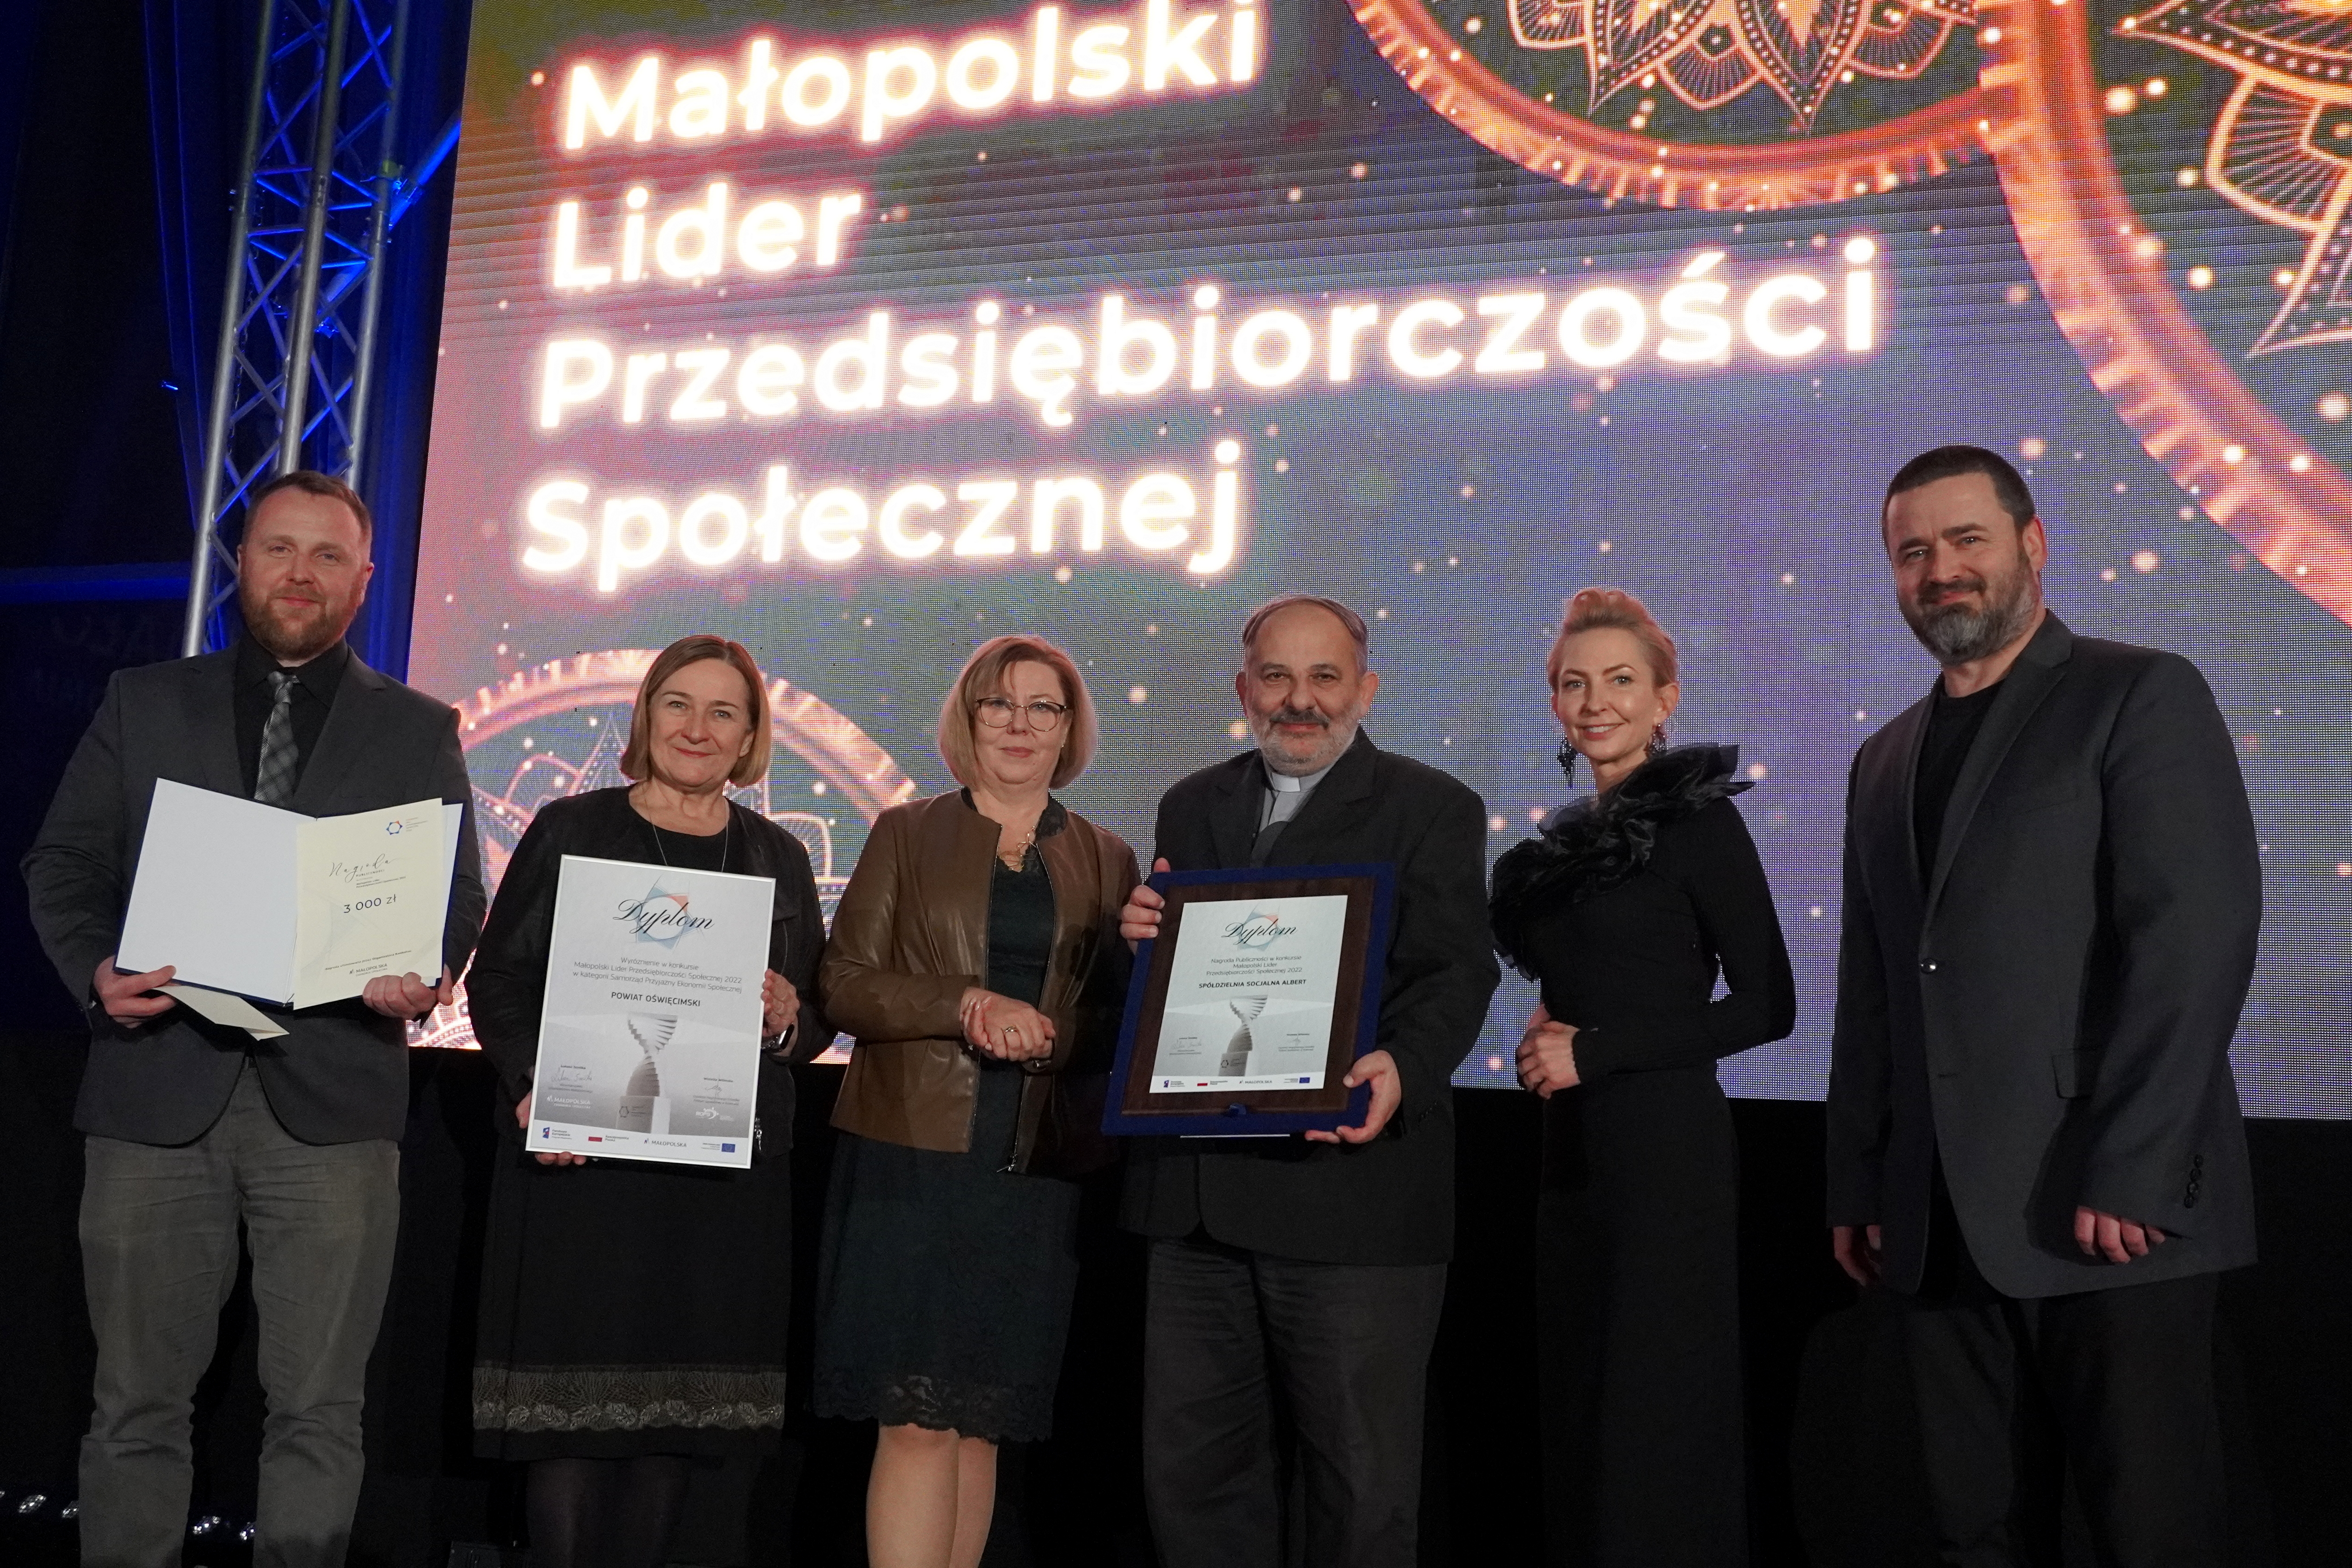 Pamiątkowe zdjęcie laureatów konkursu Małopolski lider przedsiębiorczości społecznej.